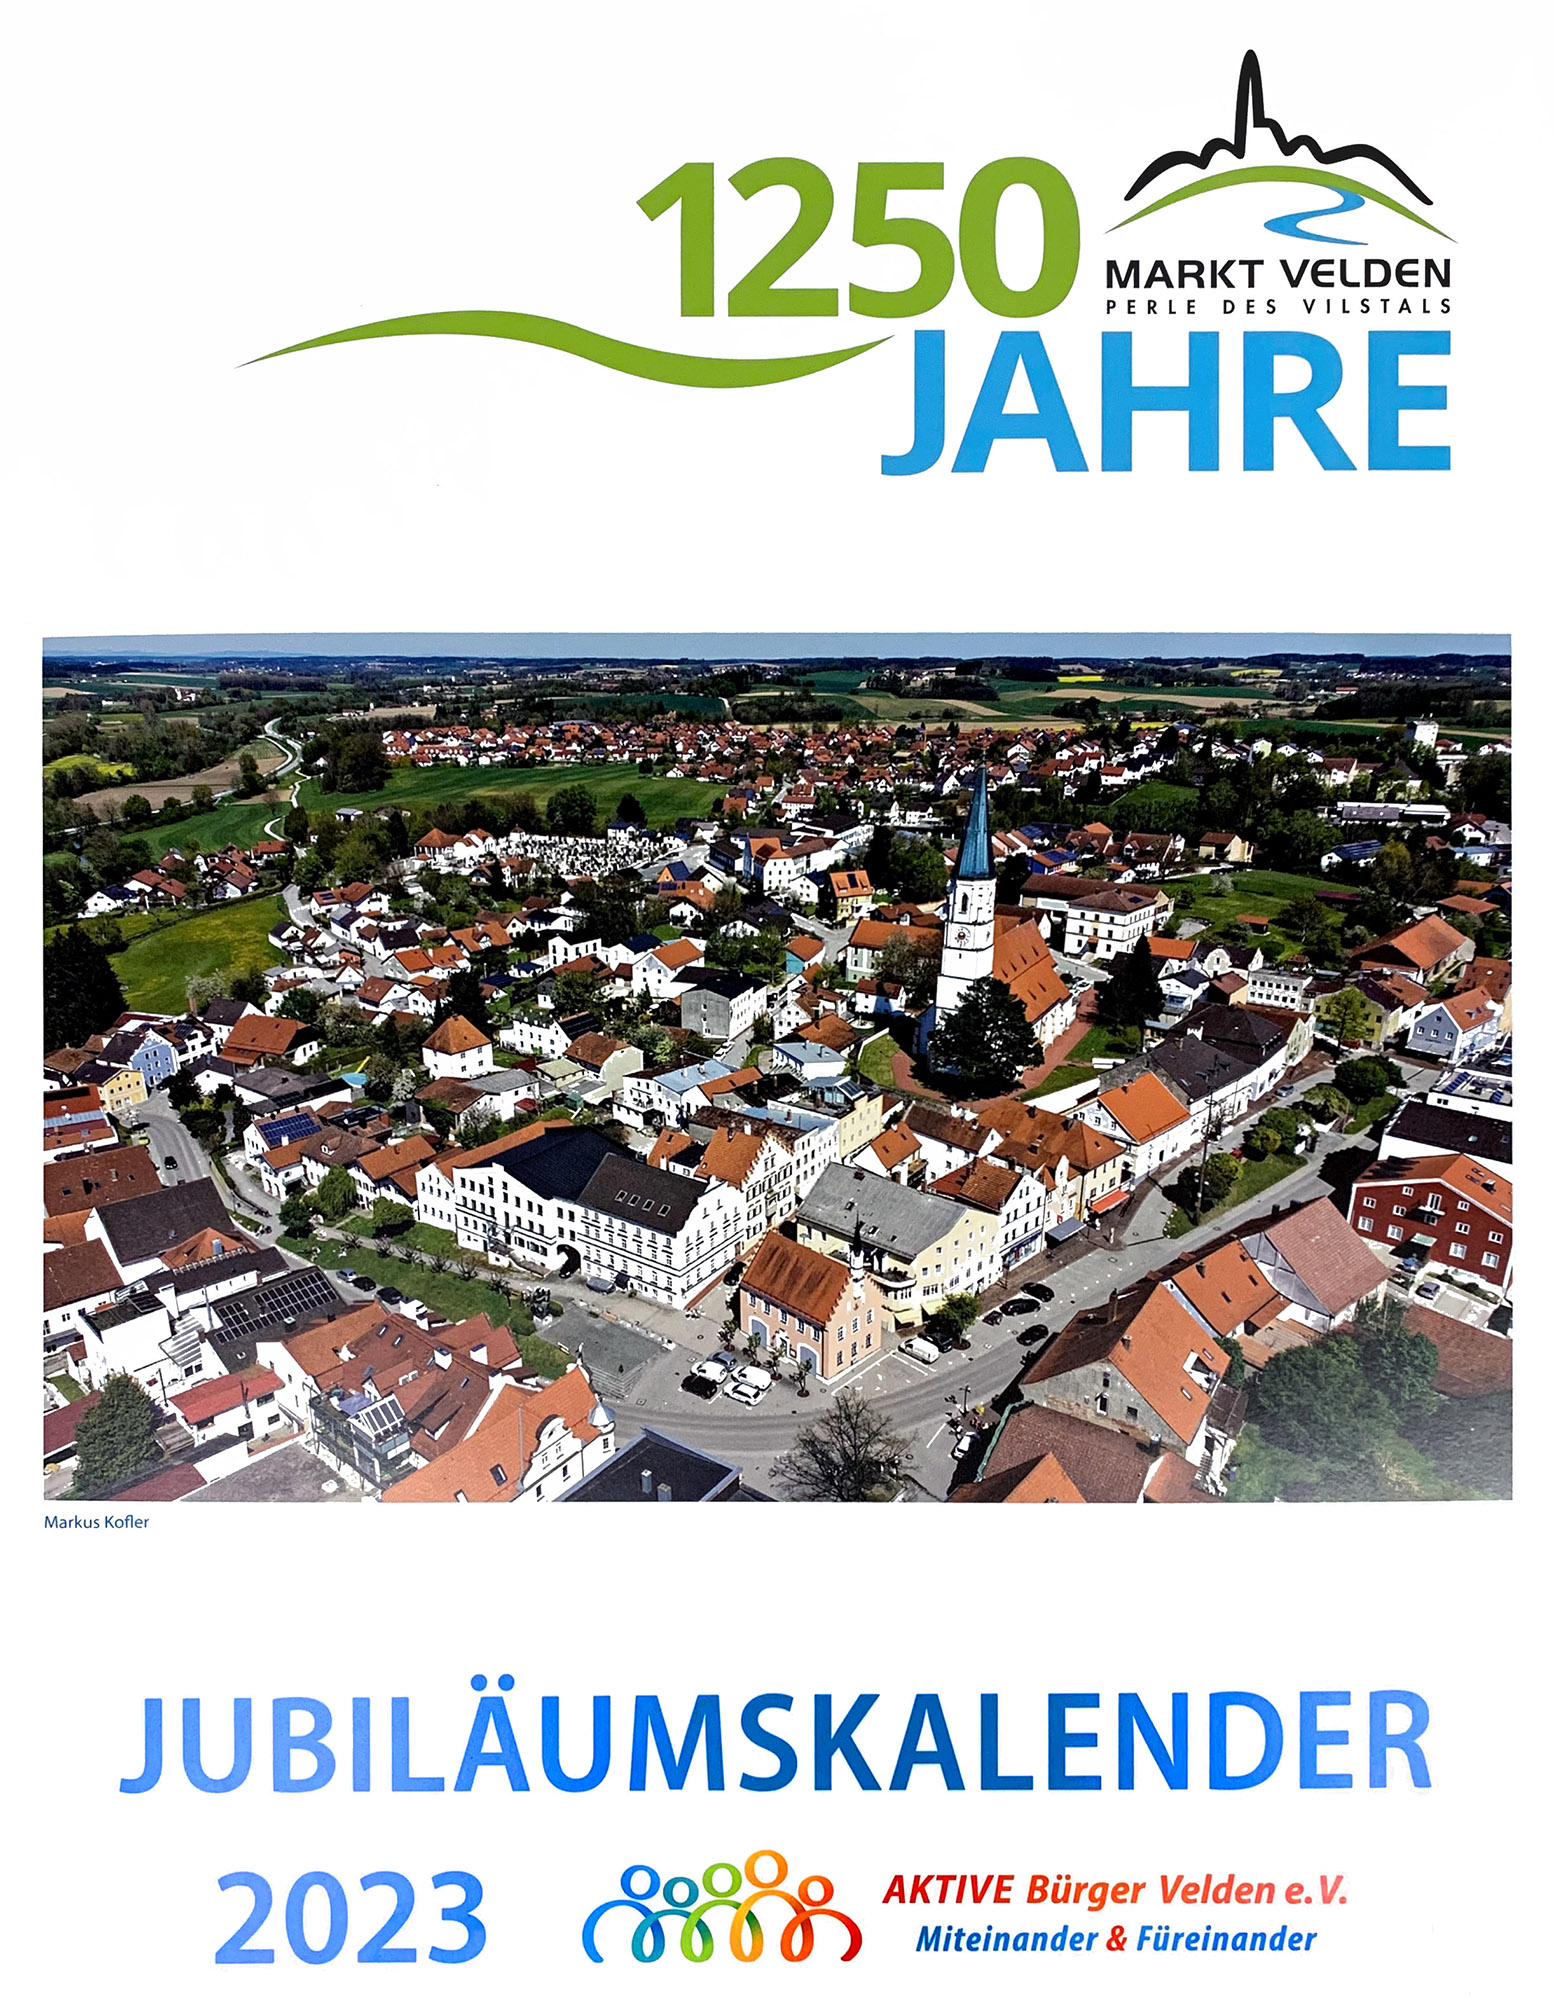 Jubiläumskalender 1250 Jahre Markt Velden des Vereins Aktive Bürger Velden e.V.